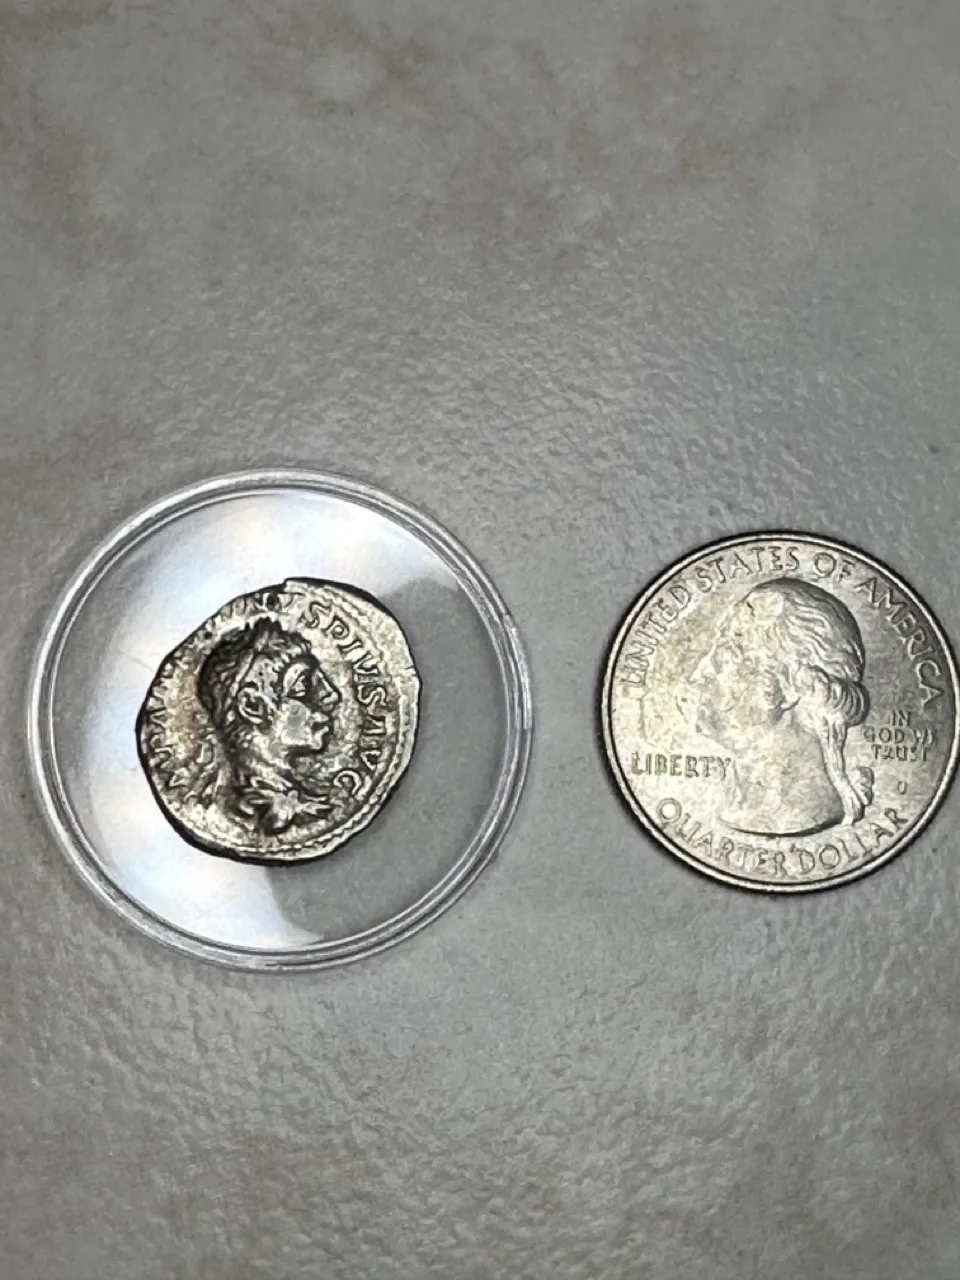 Roman Coin, 95-98% Silver, unique shape Prehistoric Online